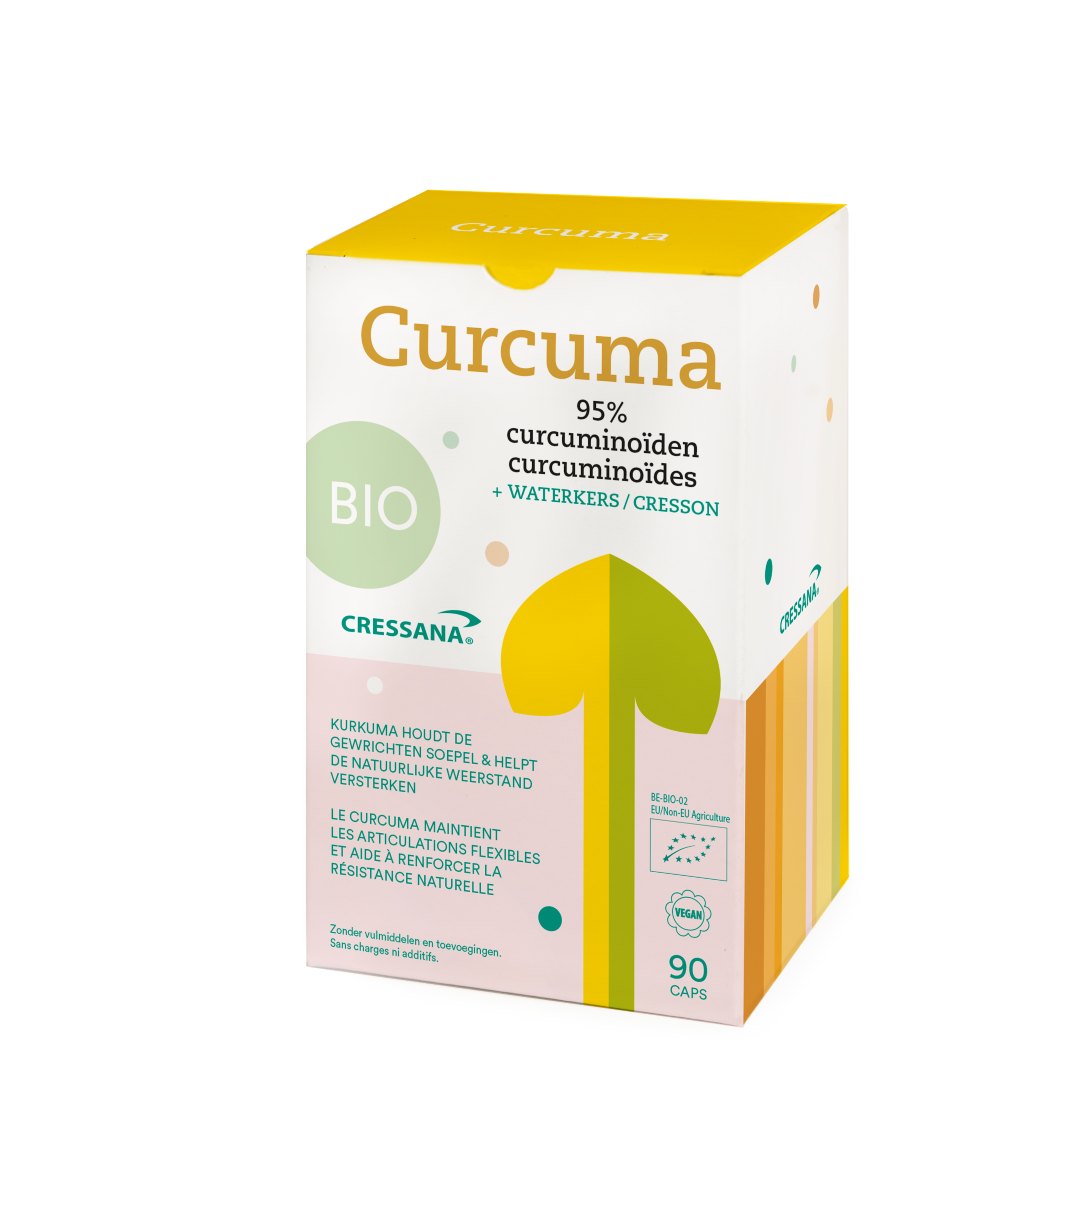 Curcuma 95% curcuminoïden BIO Cressana® Nederland